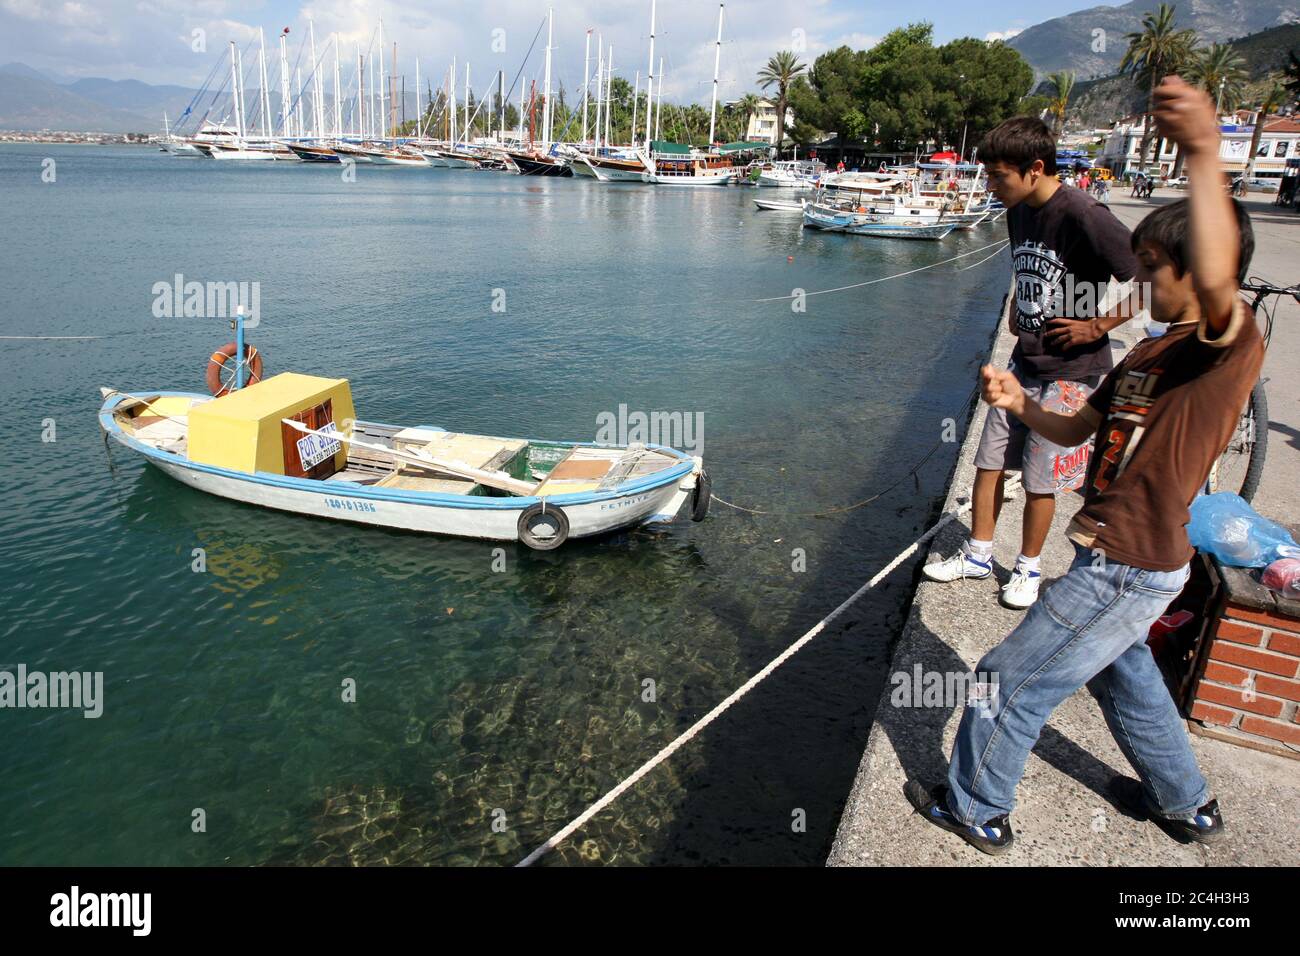 Ragazzi che pescano con una lenza a Fethiye Harbour in Turchia. Fethiye si trova sulla Costa Turchese della Turchia ed è conosciuta per il suo porto naturale. Foto Stock